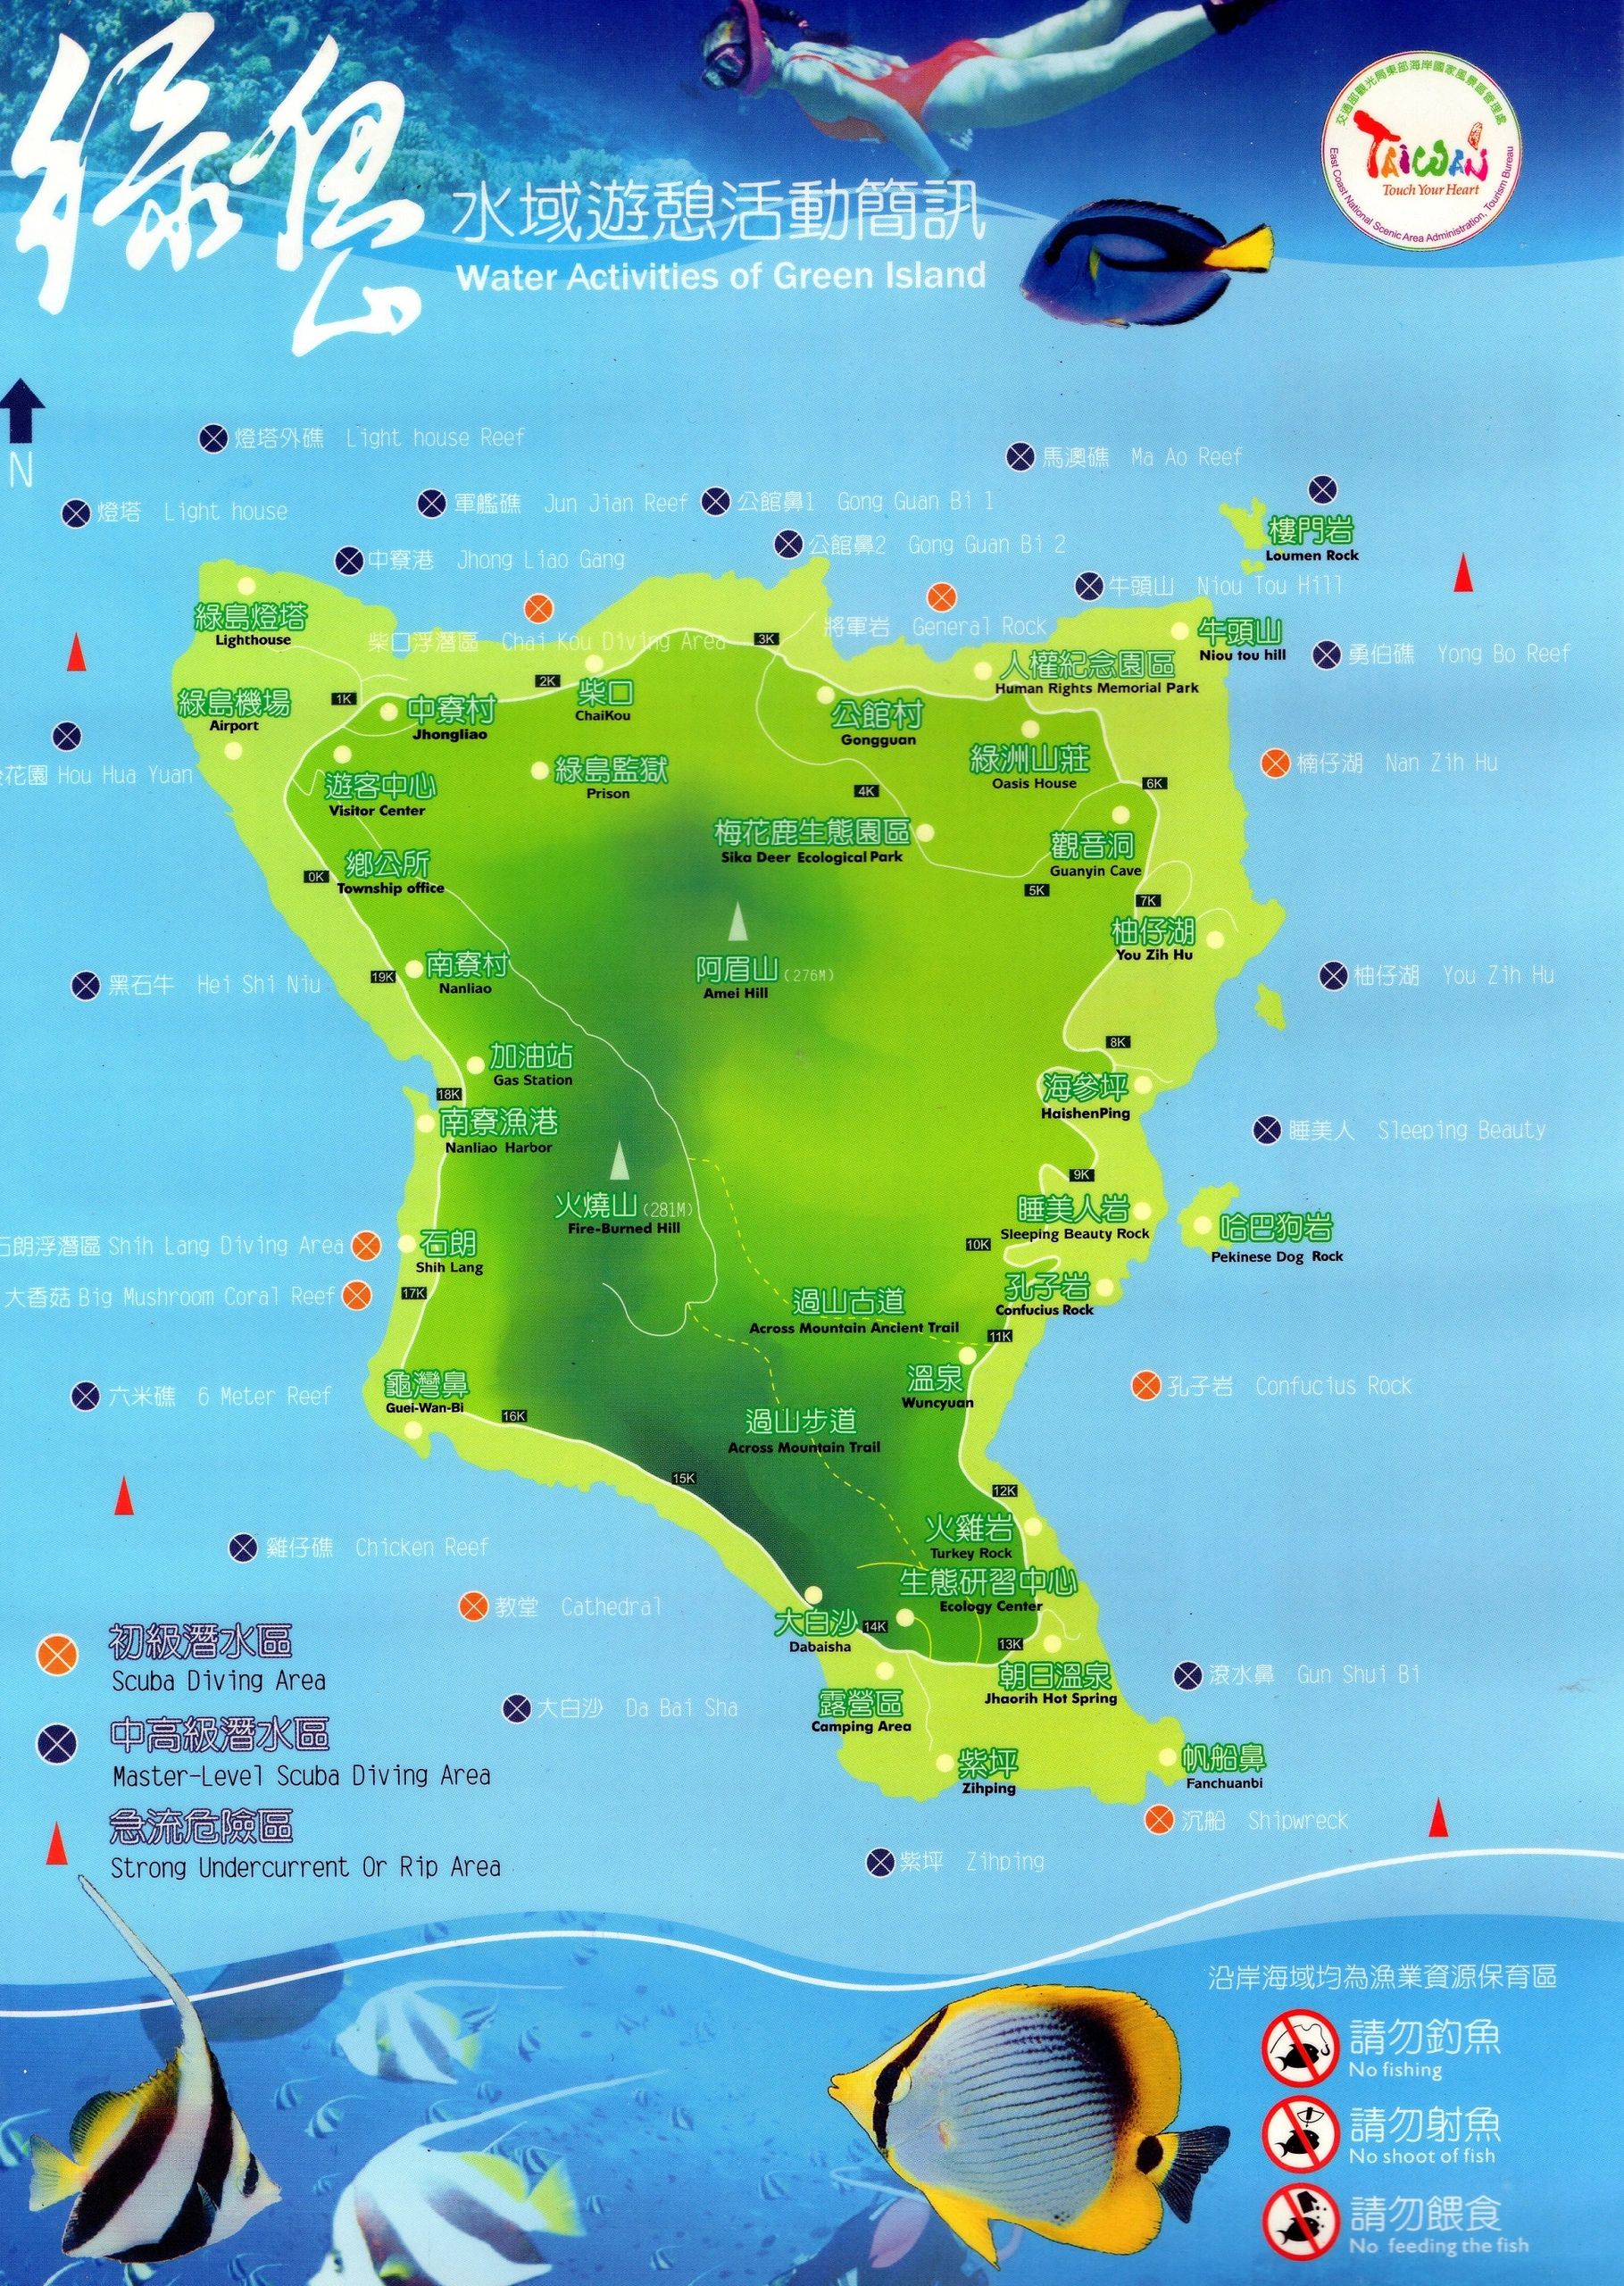 Map of Green Island Taiwan